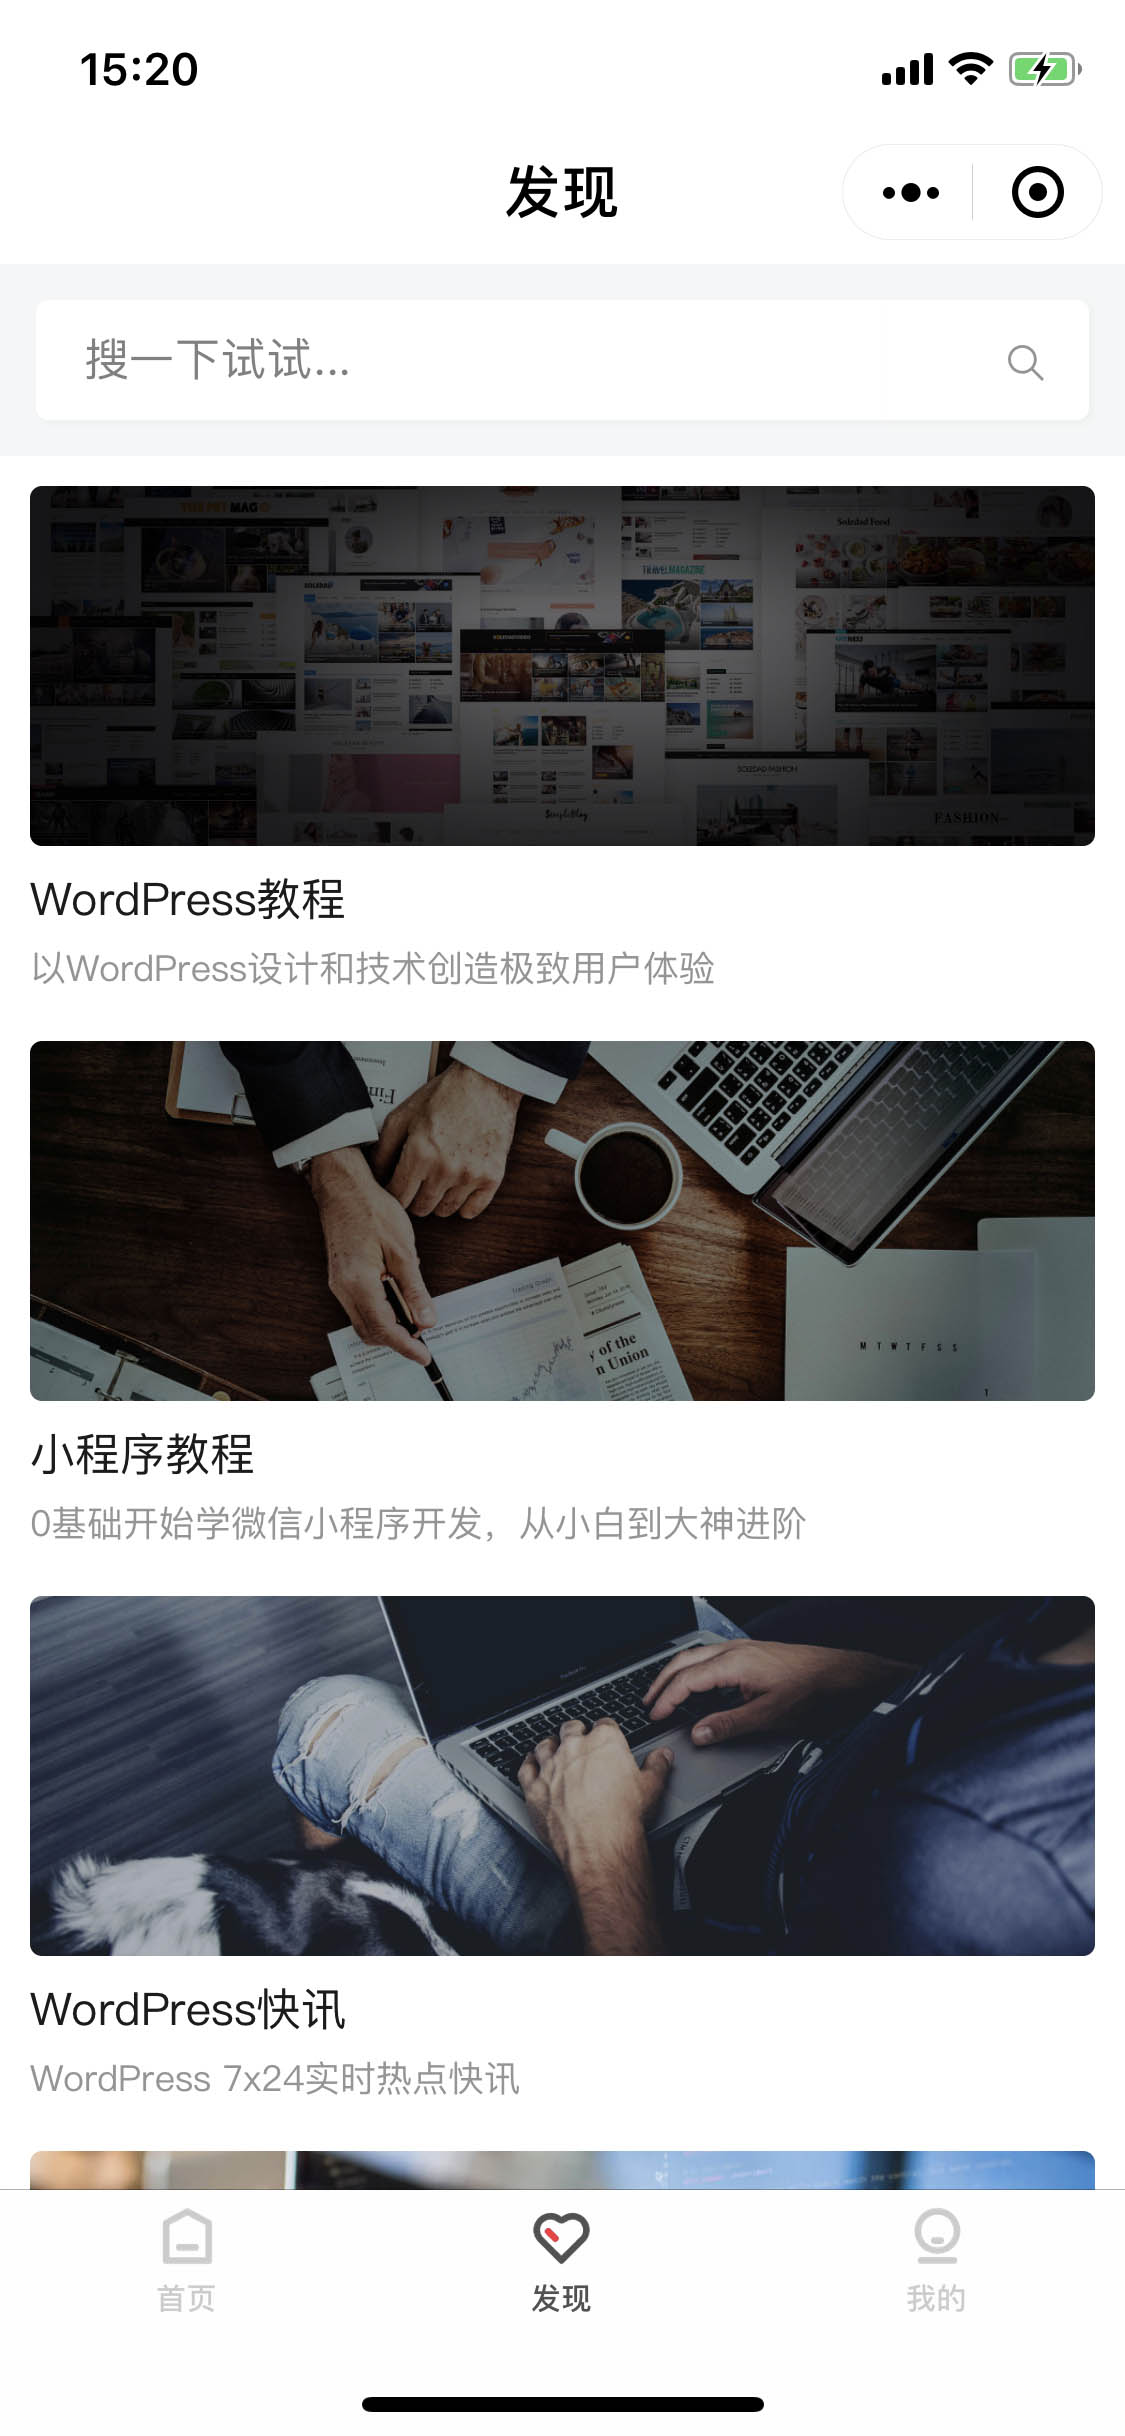 WordPress中文网_WordPress中文网小程序_WordPress中文网微信小程序